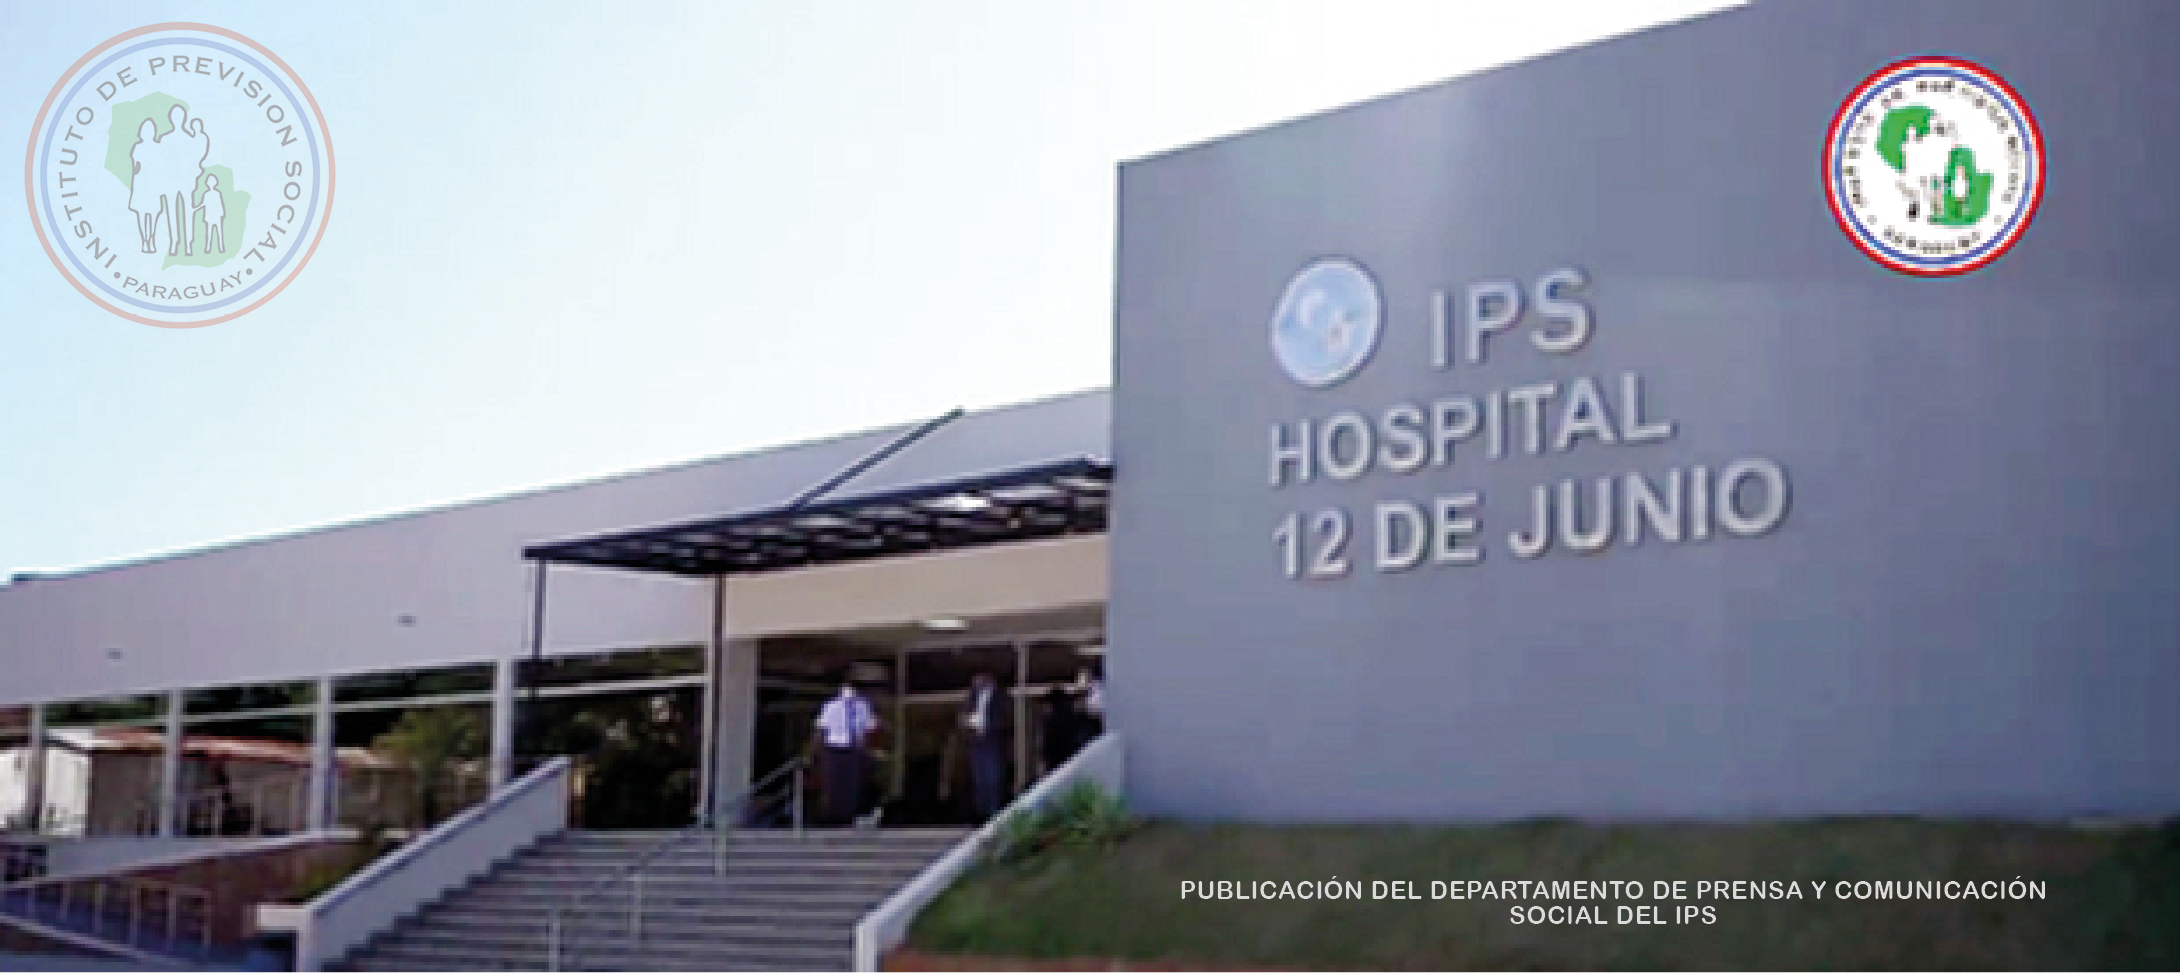 Obras en el Hospital 12 de Junio del IPS